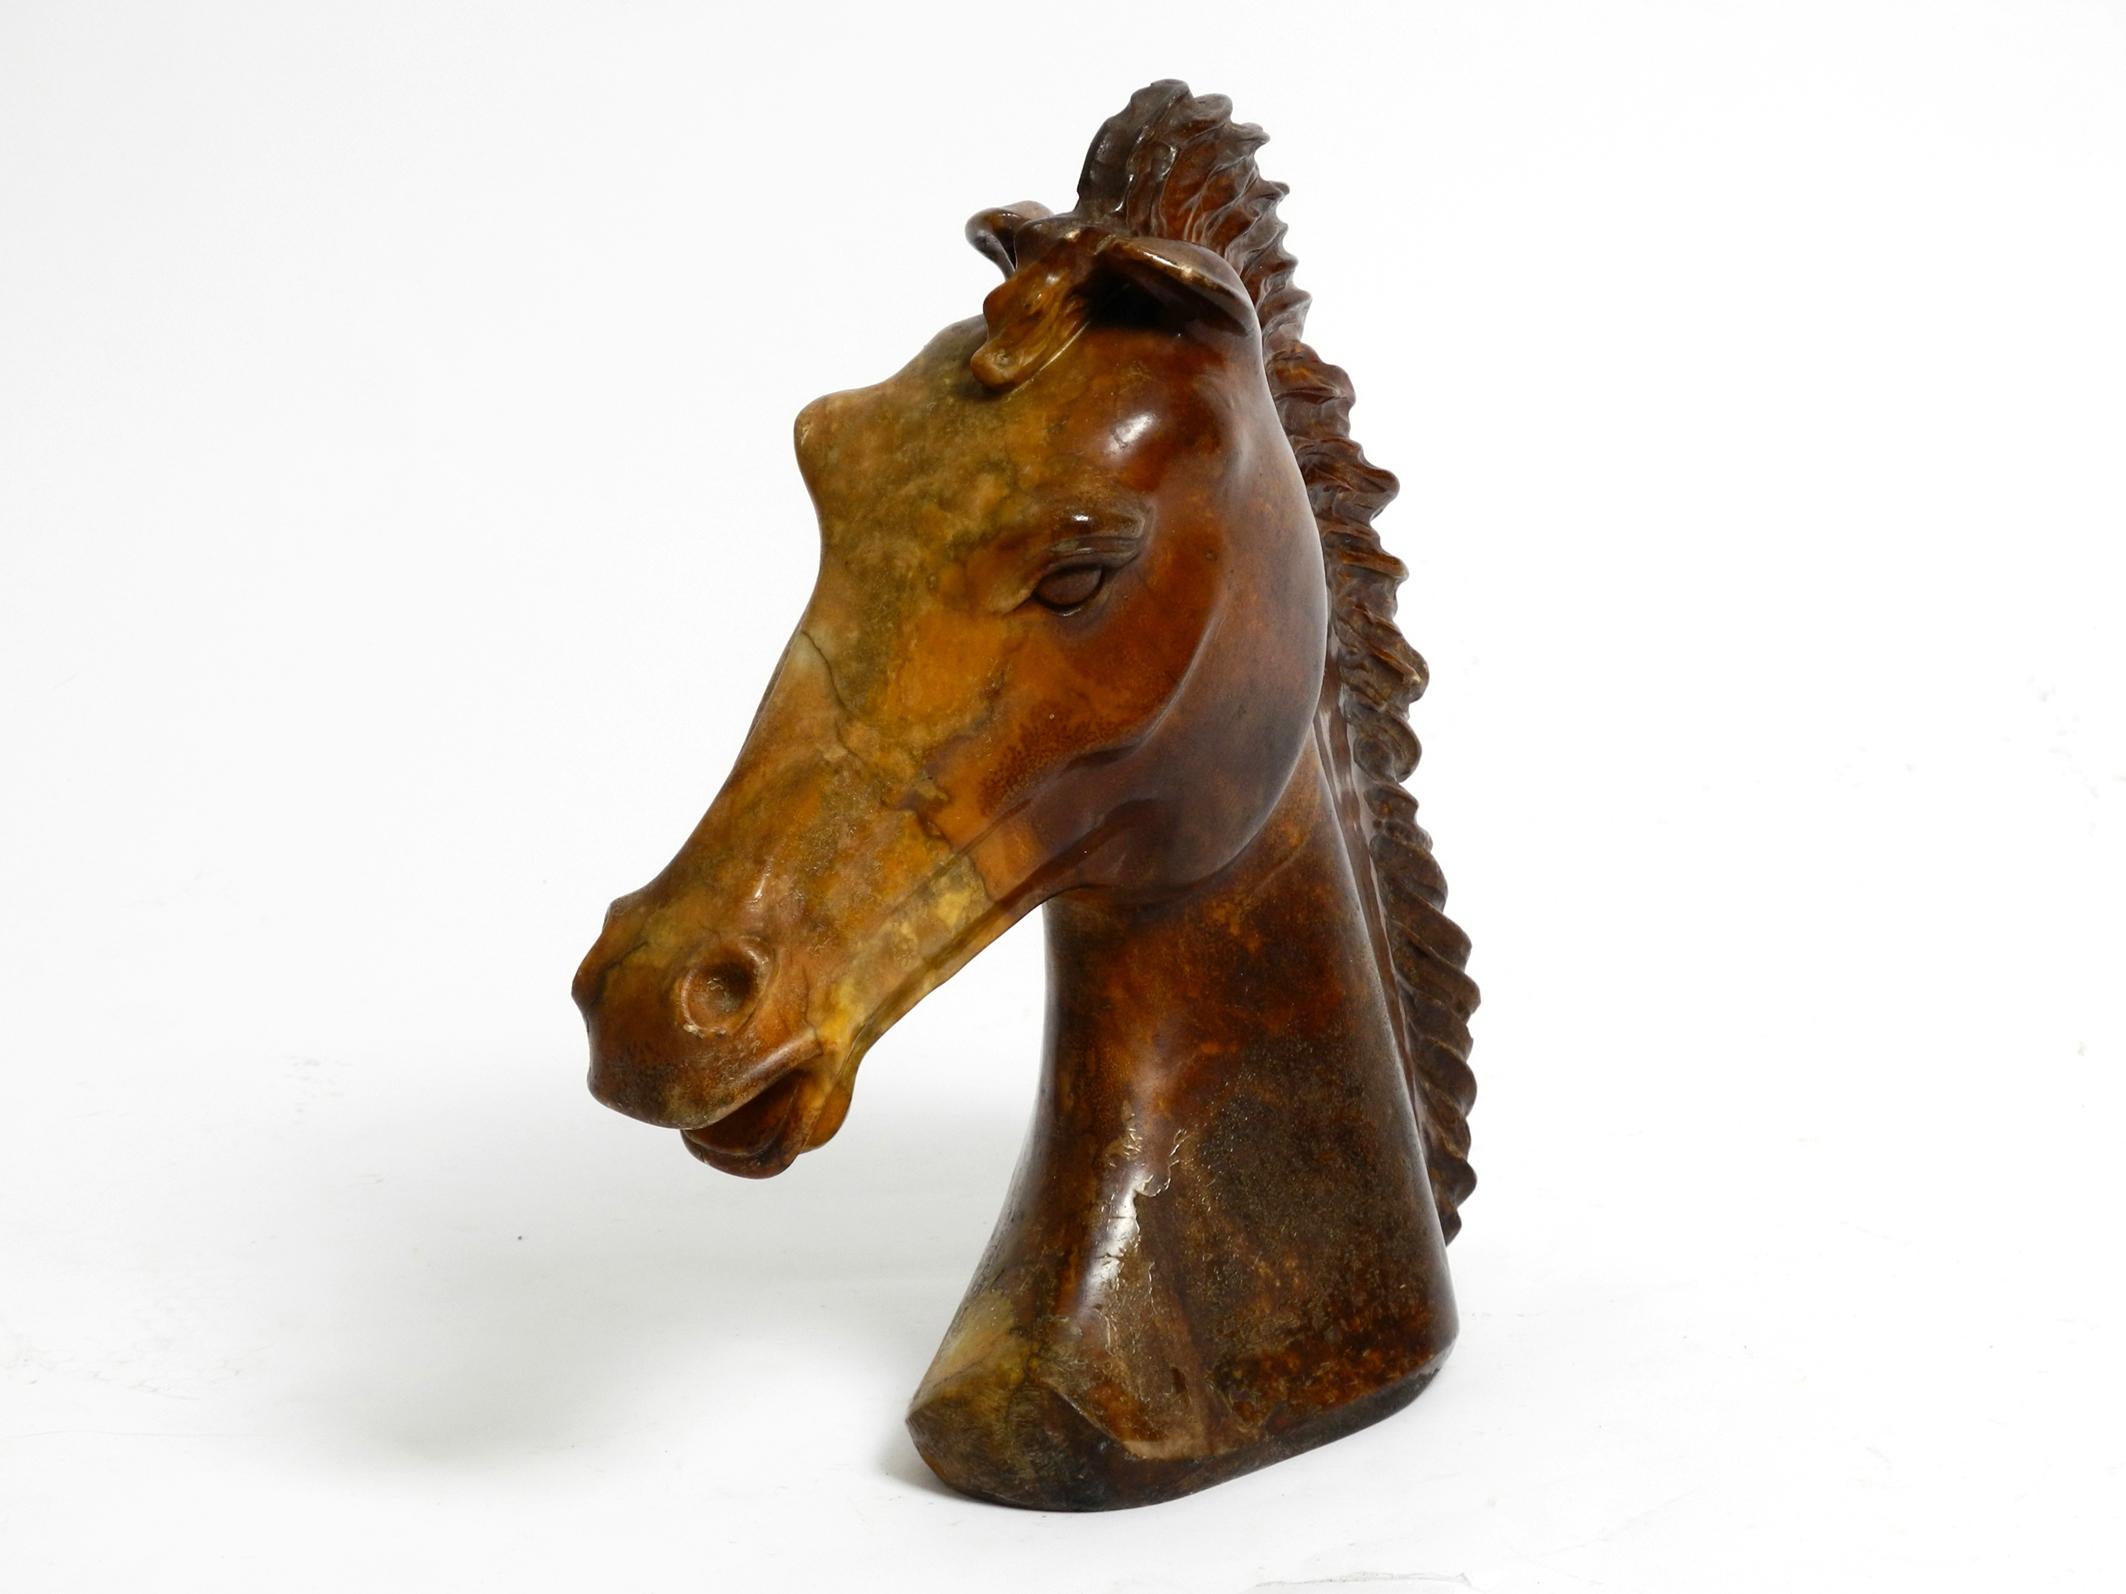 Très belle sculpture décorative de tête de cheval en pierre ollaire brune.
Très lourd et réaliste avec le grain typique de la pierre à savon.
Superbe couleur en brun foncé et dégradé en jaune.
Acheté dans les années 1960 selon l'ancien